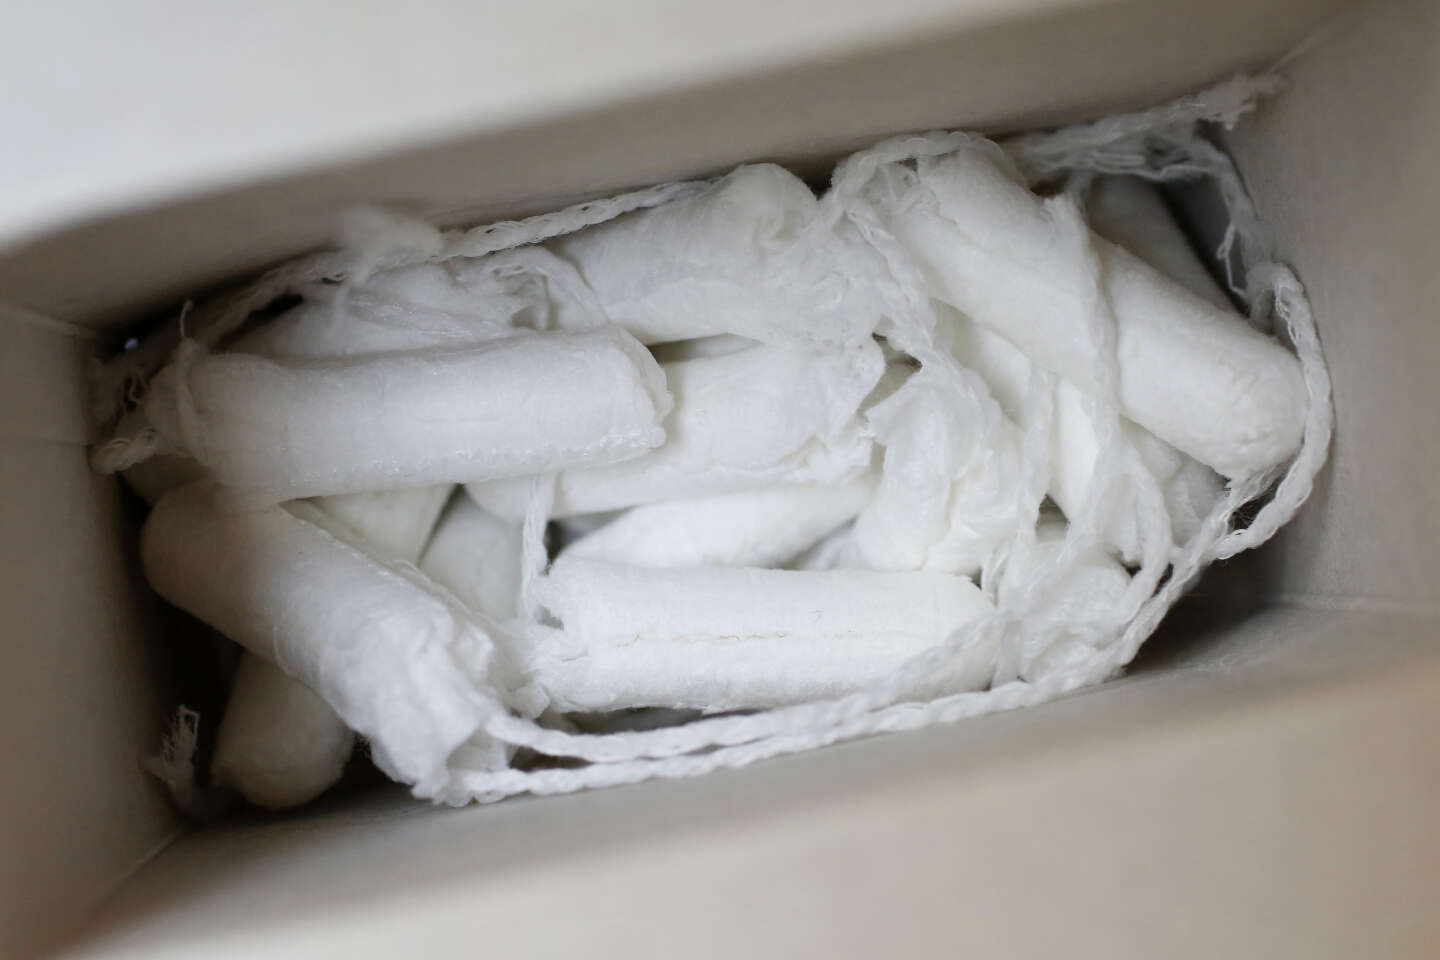 Les tampons hygiéniques sont-ils dangereux pour la santé ?